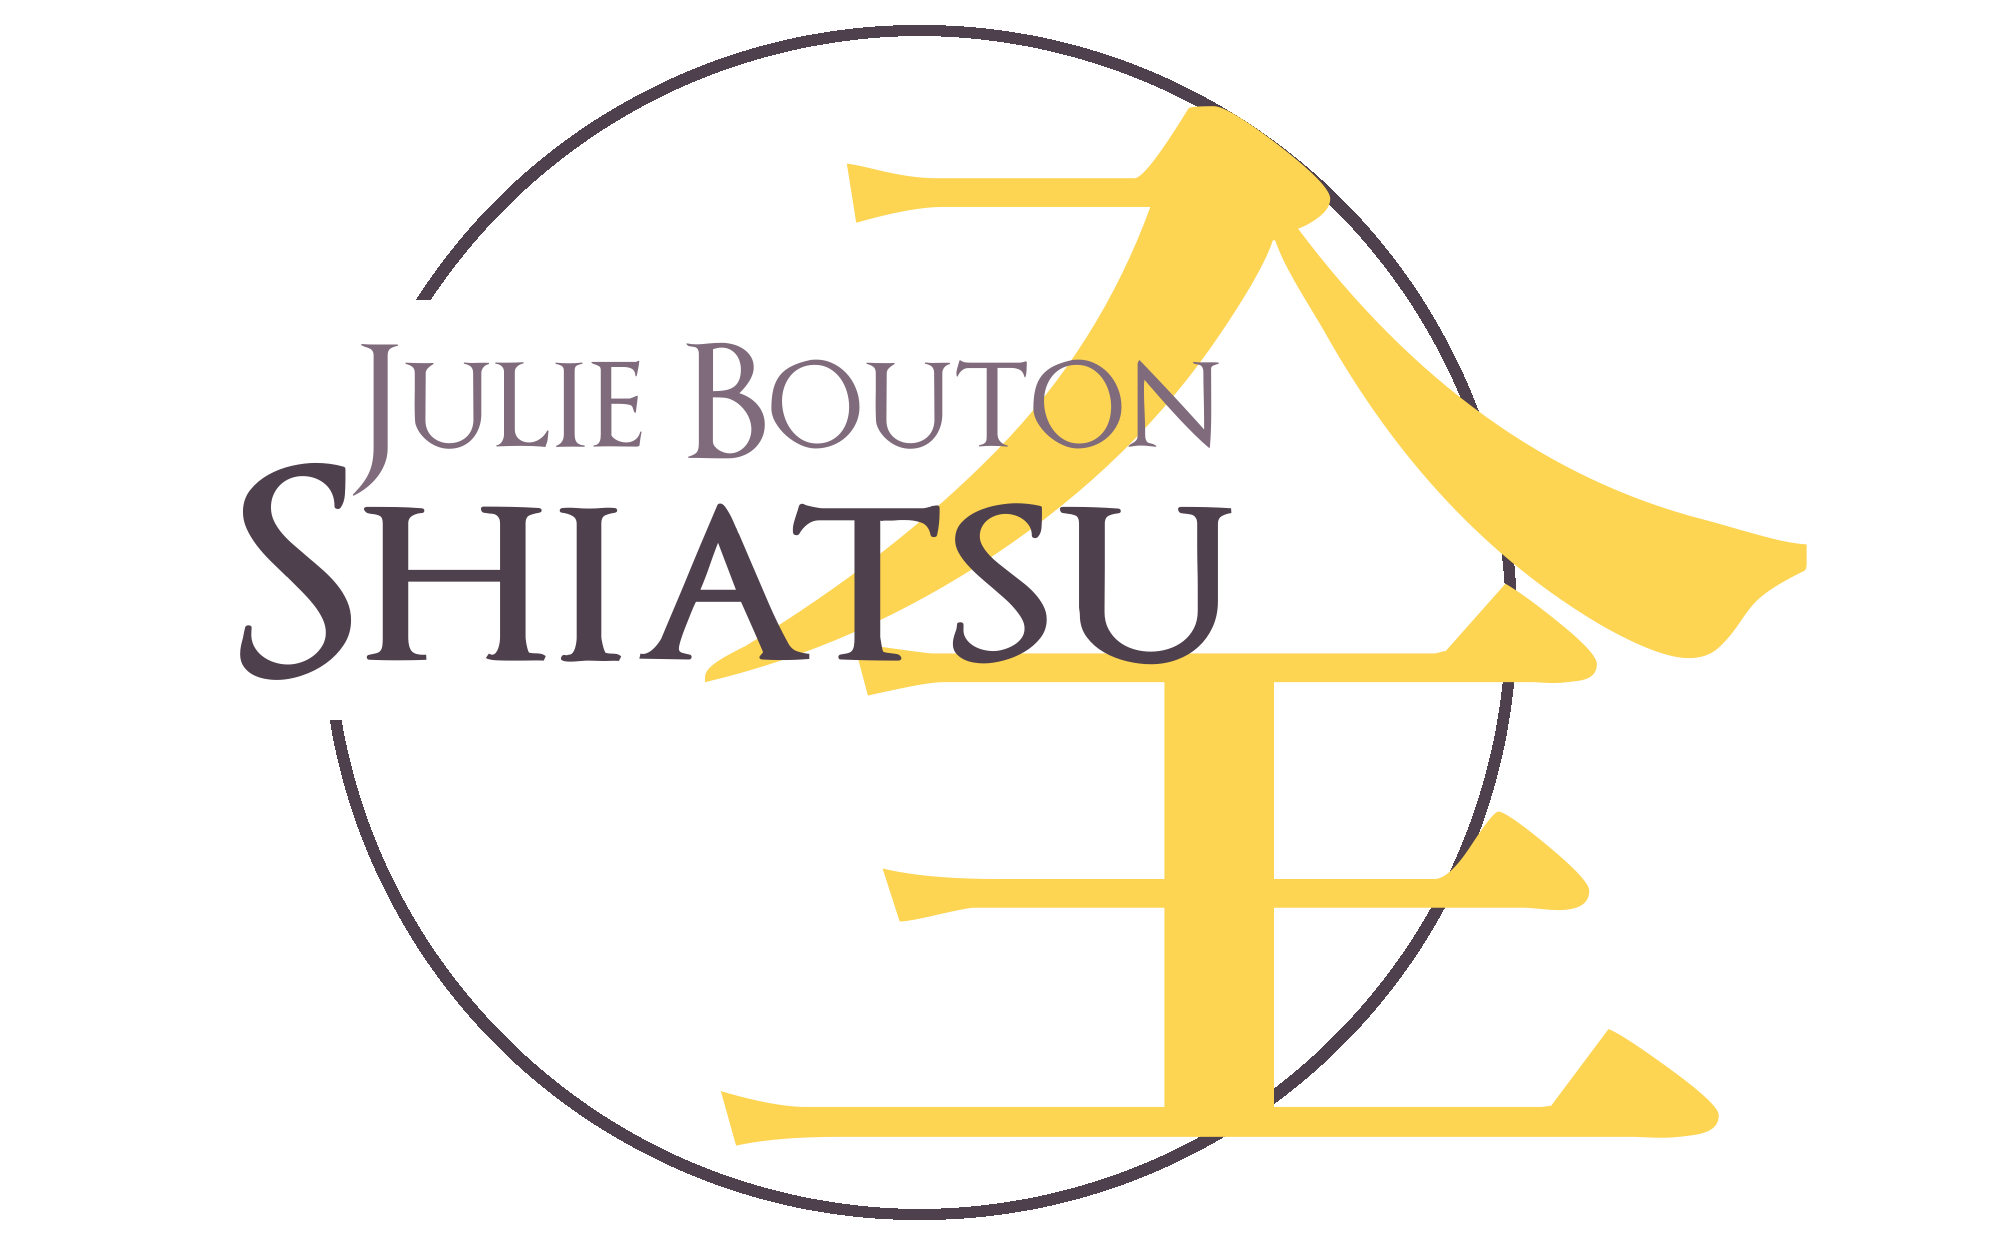 Julie Bouton - Spécialiste en shiatsu : infos, localisation, contacts... pour ce centre de shiatsu